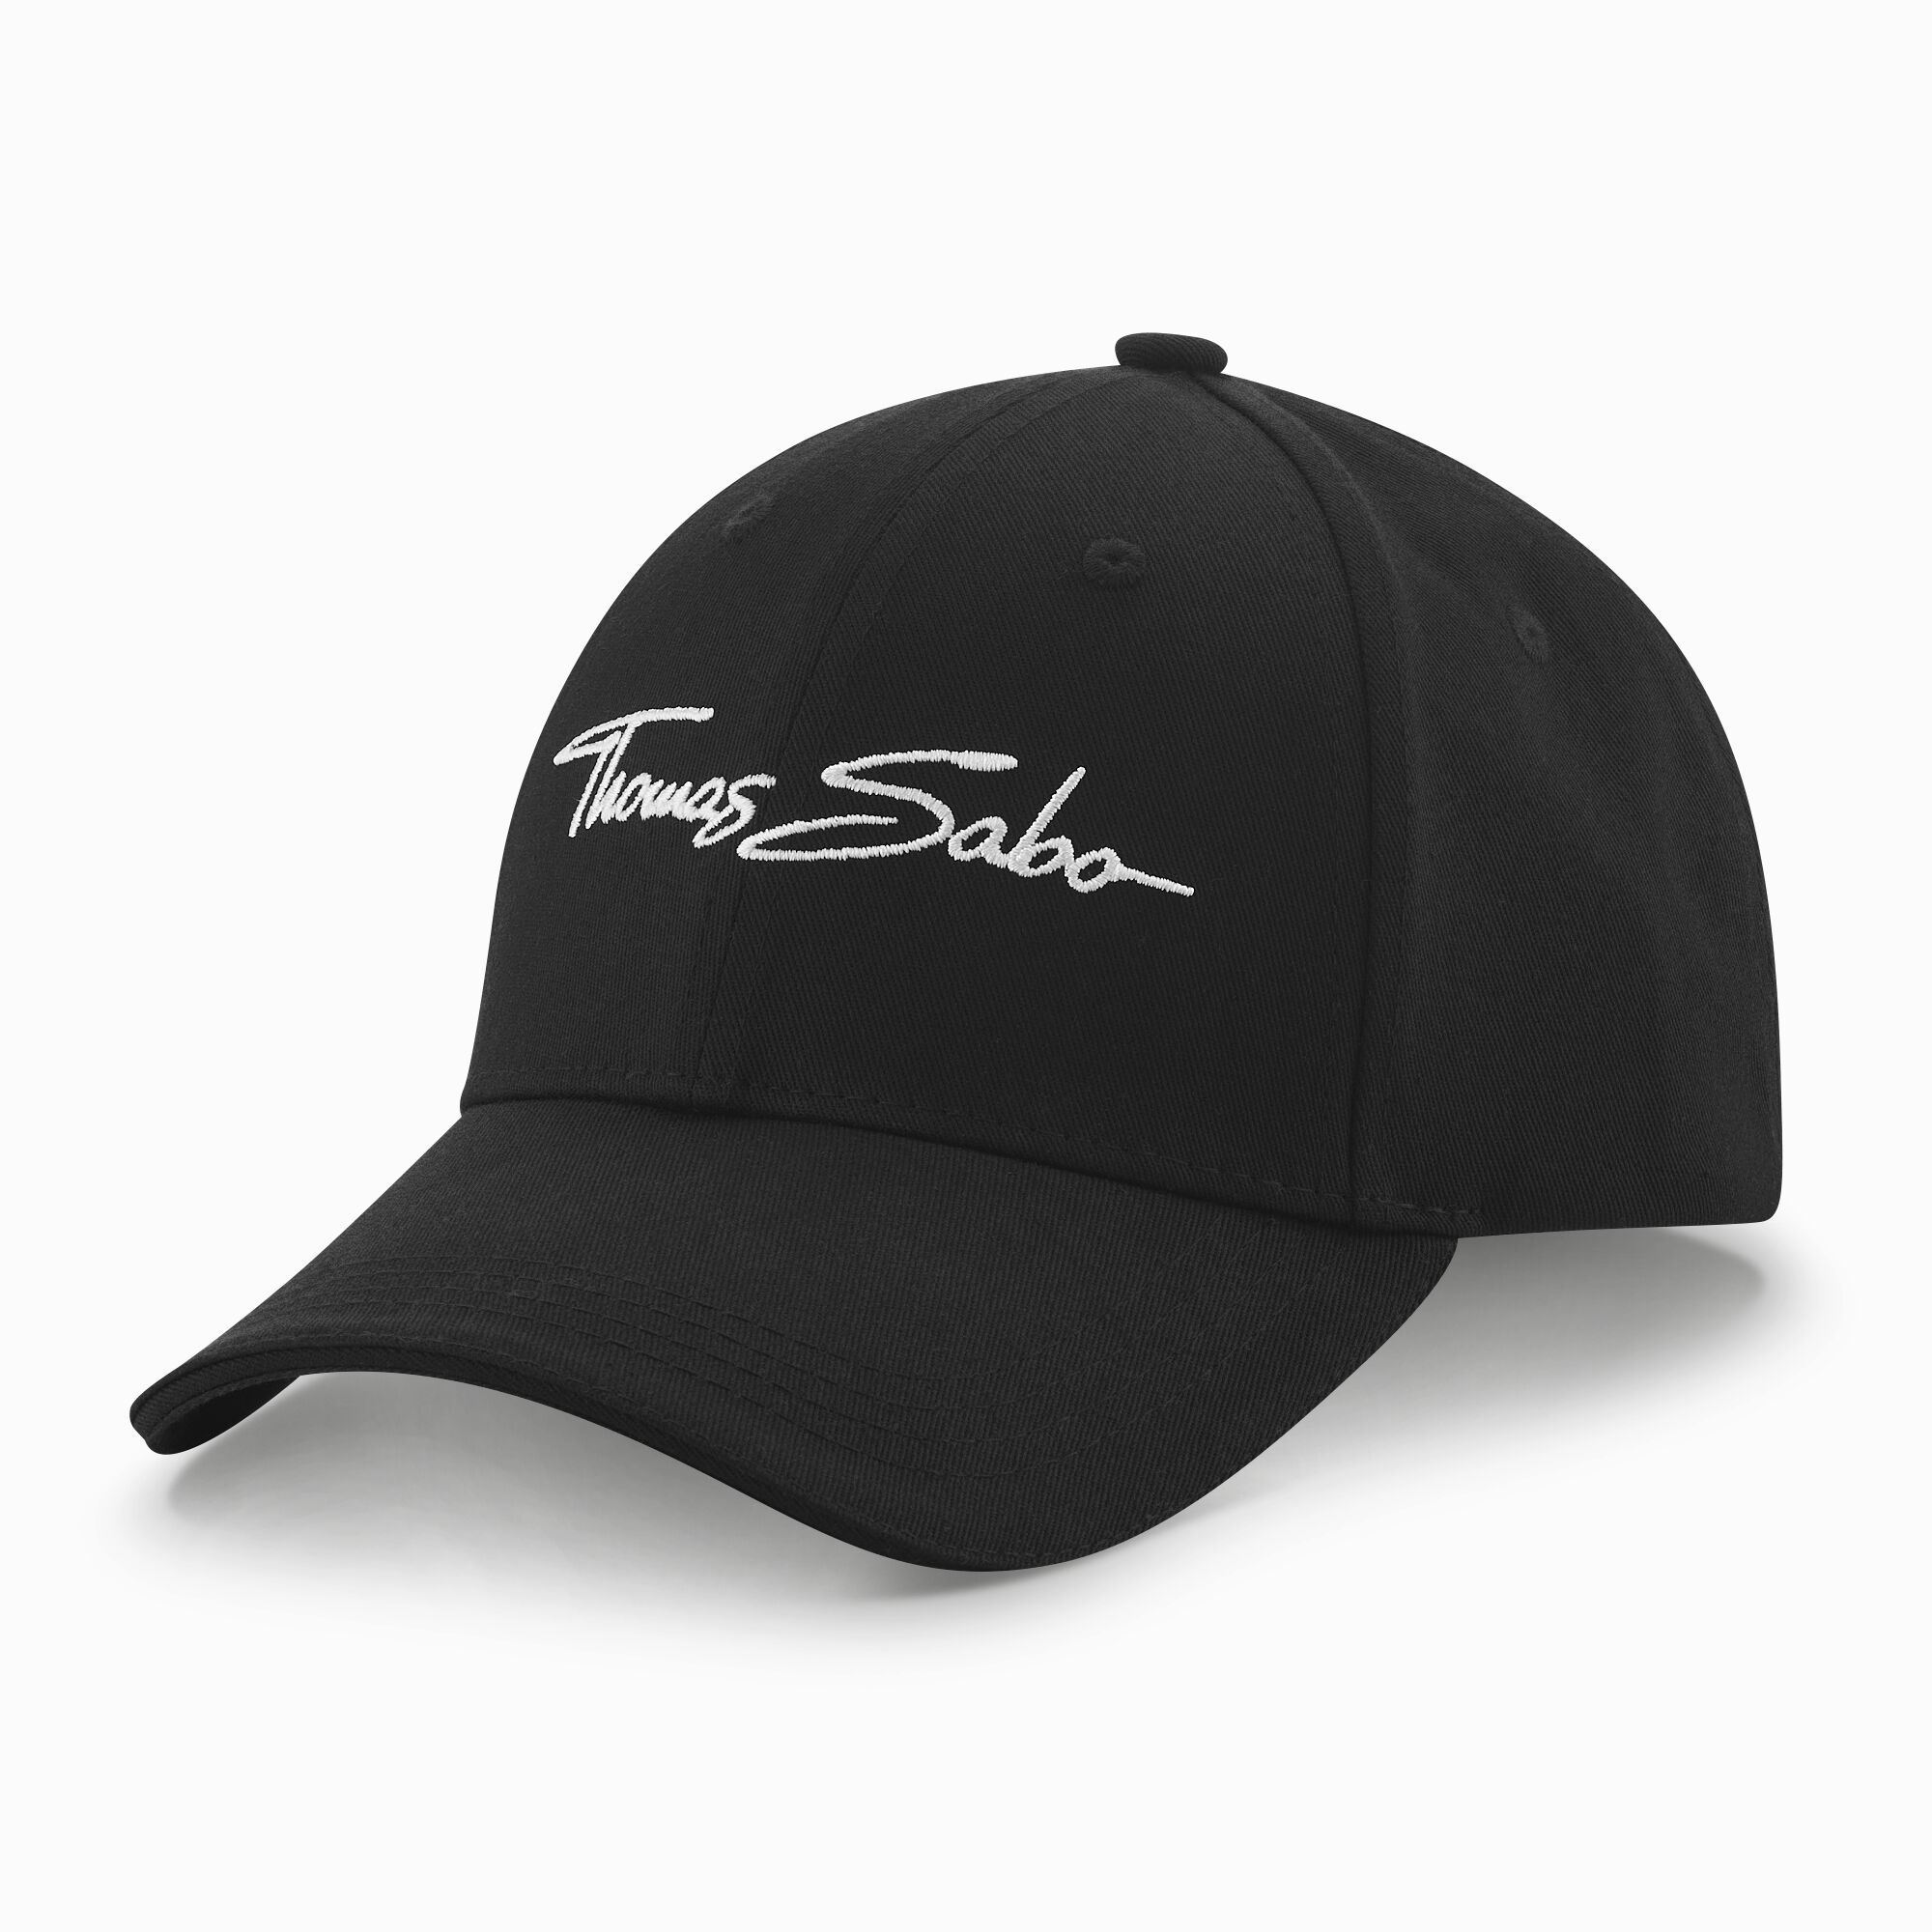 Thomas Sabo casquette de baseball noir de la collection  dans la boutique en ligne de THOMAS SABO